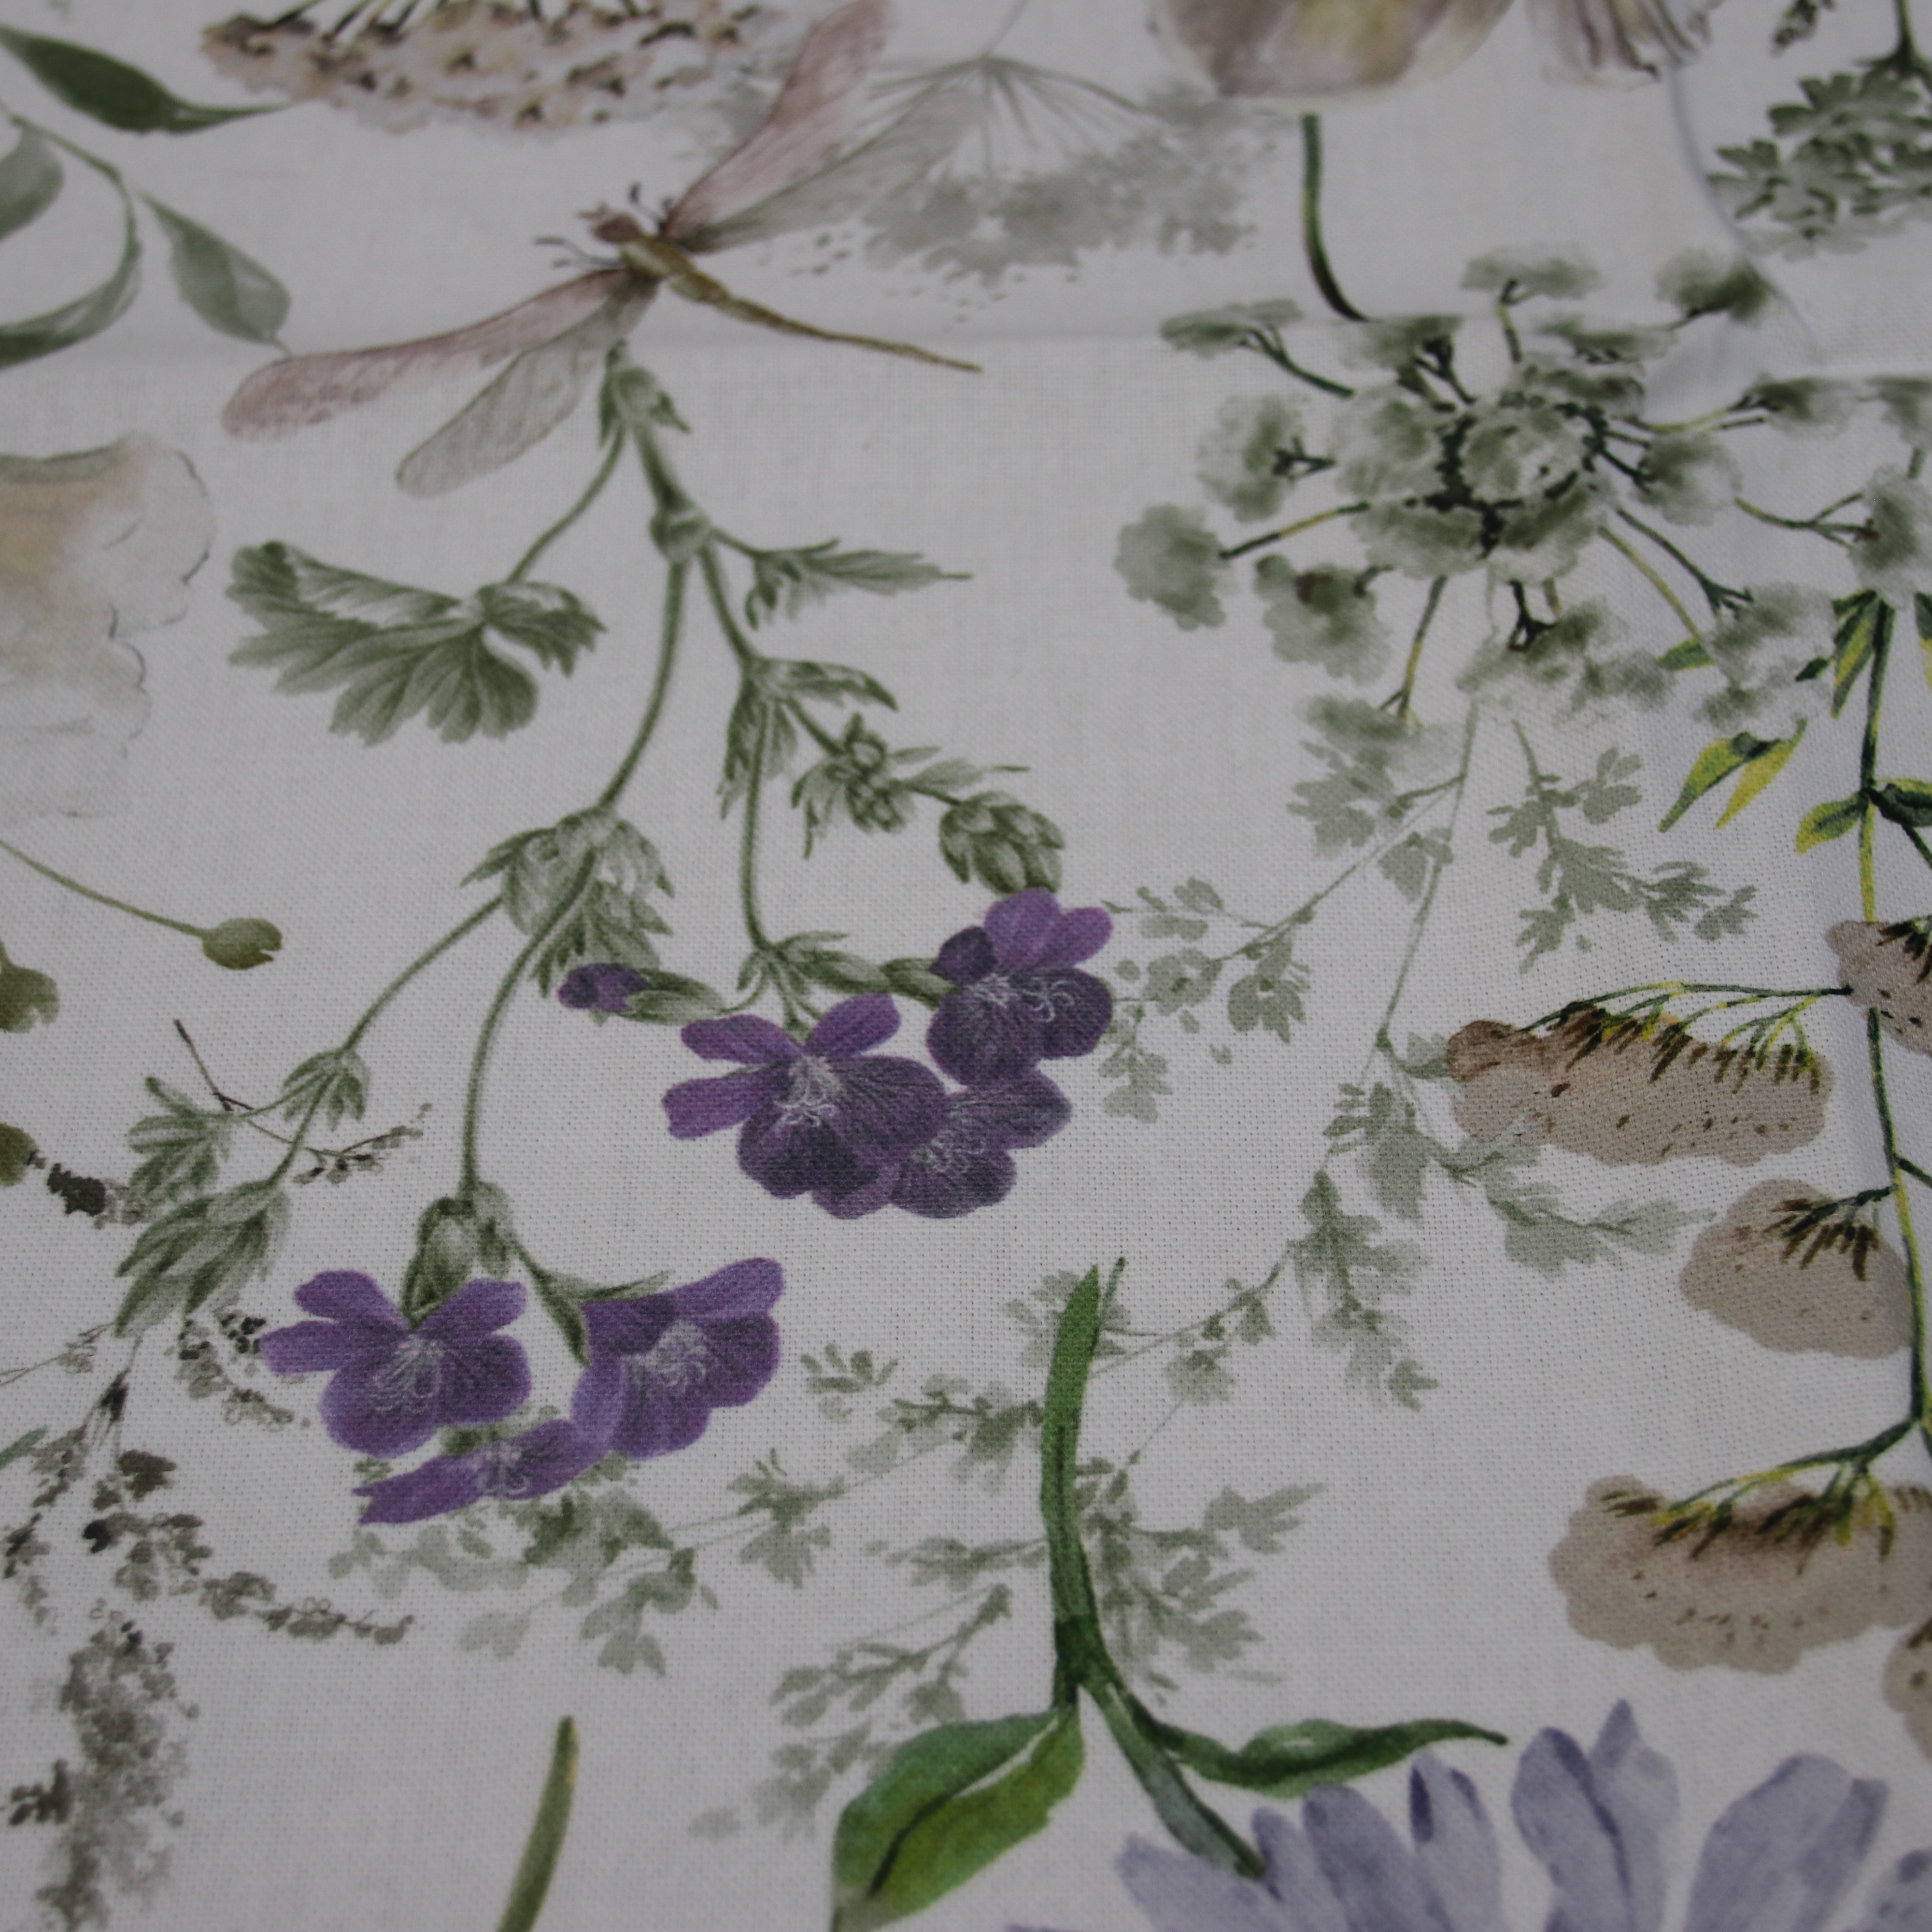 Pichler Lissy Tischläufer mit floralem Muster in Lila aus 100% Baumwolle 50x150cm